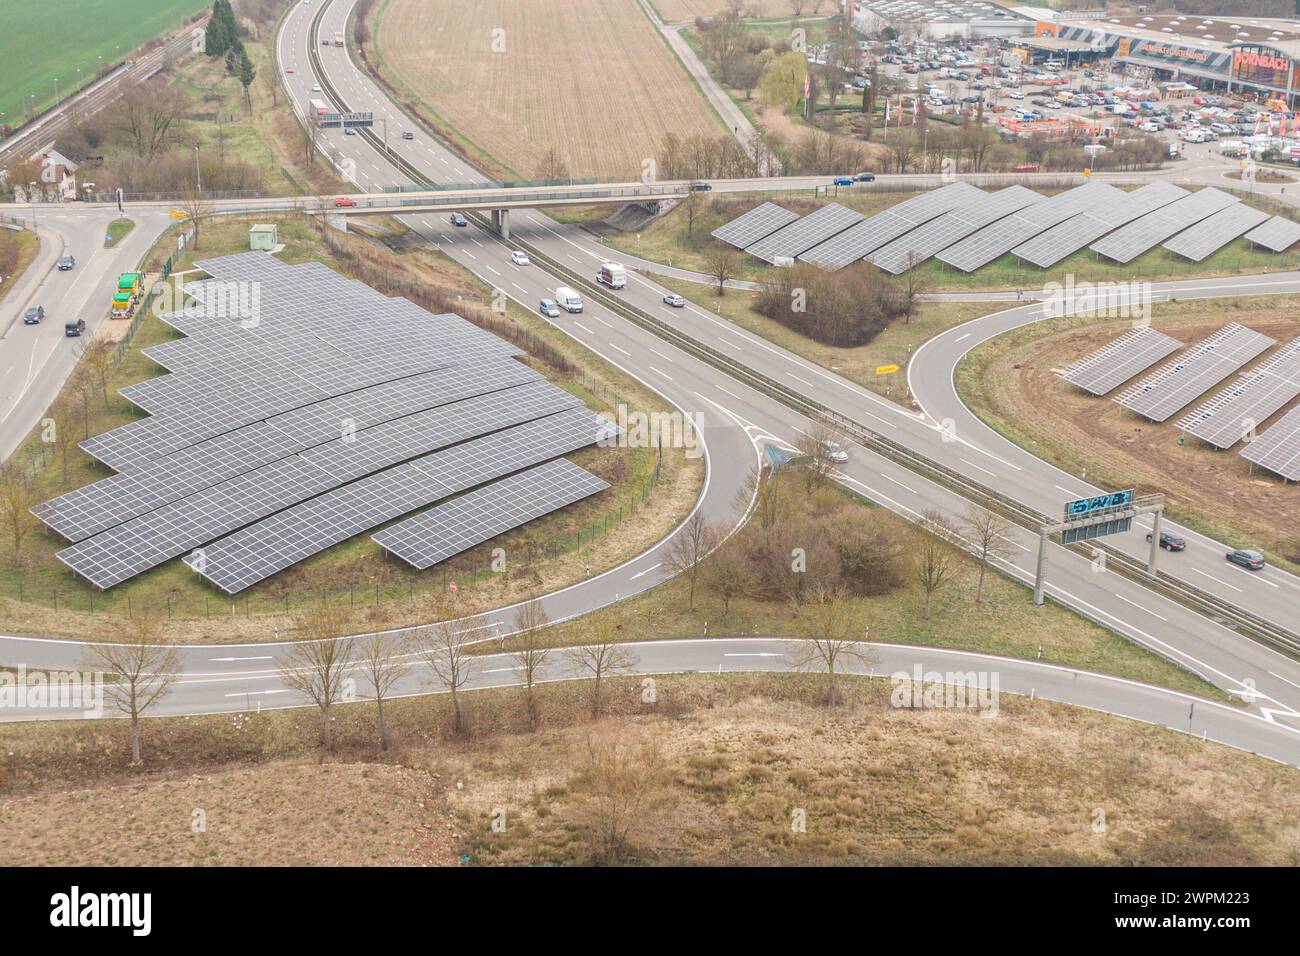 Neuer Solarpark an der B27 a Tübingen. Verbaut wurden 15,045 Solarpanel. Erzeugt werden rund 8,800 Megawattstunden pro Jahr. Damit können 1,955 Vier-Personen-Haushalte mit Ökostrom versorgt werden. *** Nuovo parco solare sulla B27 in Tübingen 15.045 pannelli solari sono stati installati circa 8.800 megawatt ore sono generati all'anno questo può fornire 1.955 famiglie di quattro persone con elettricità verde Copyright: XSimonxAdomatx Foto Stock